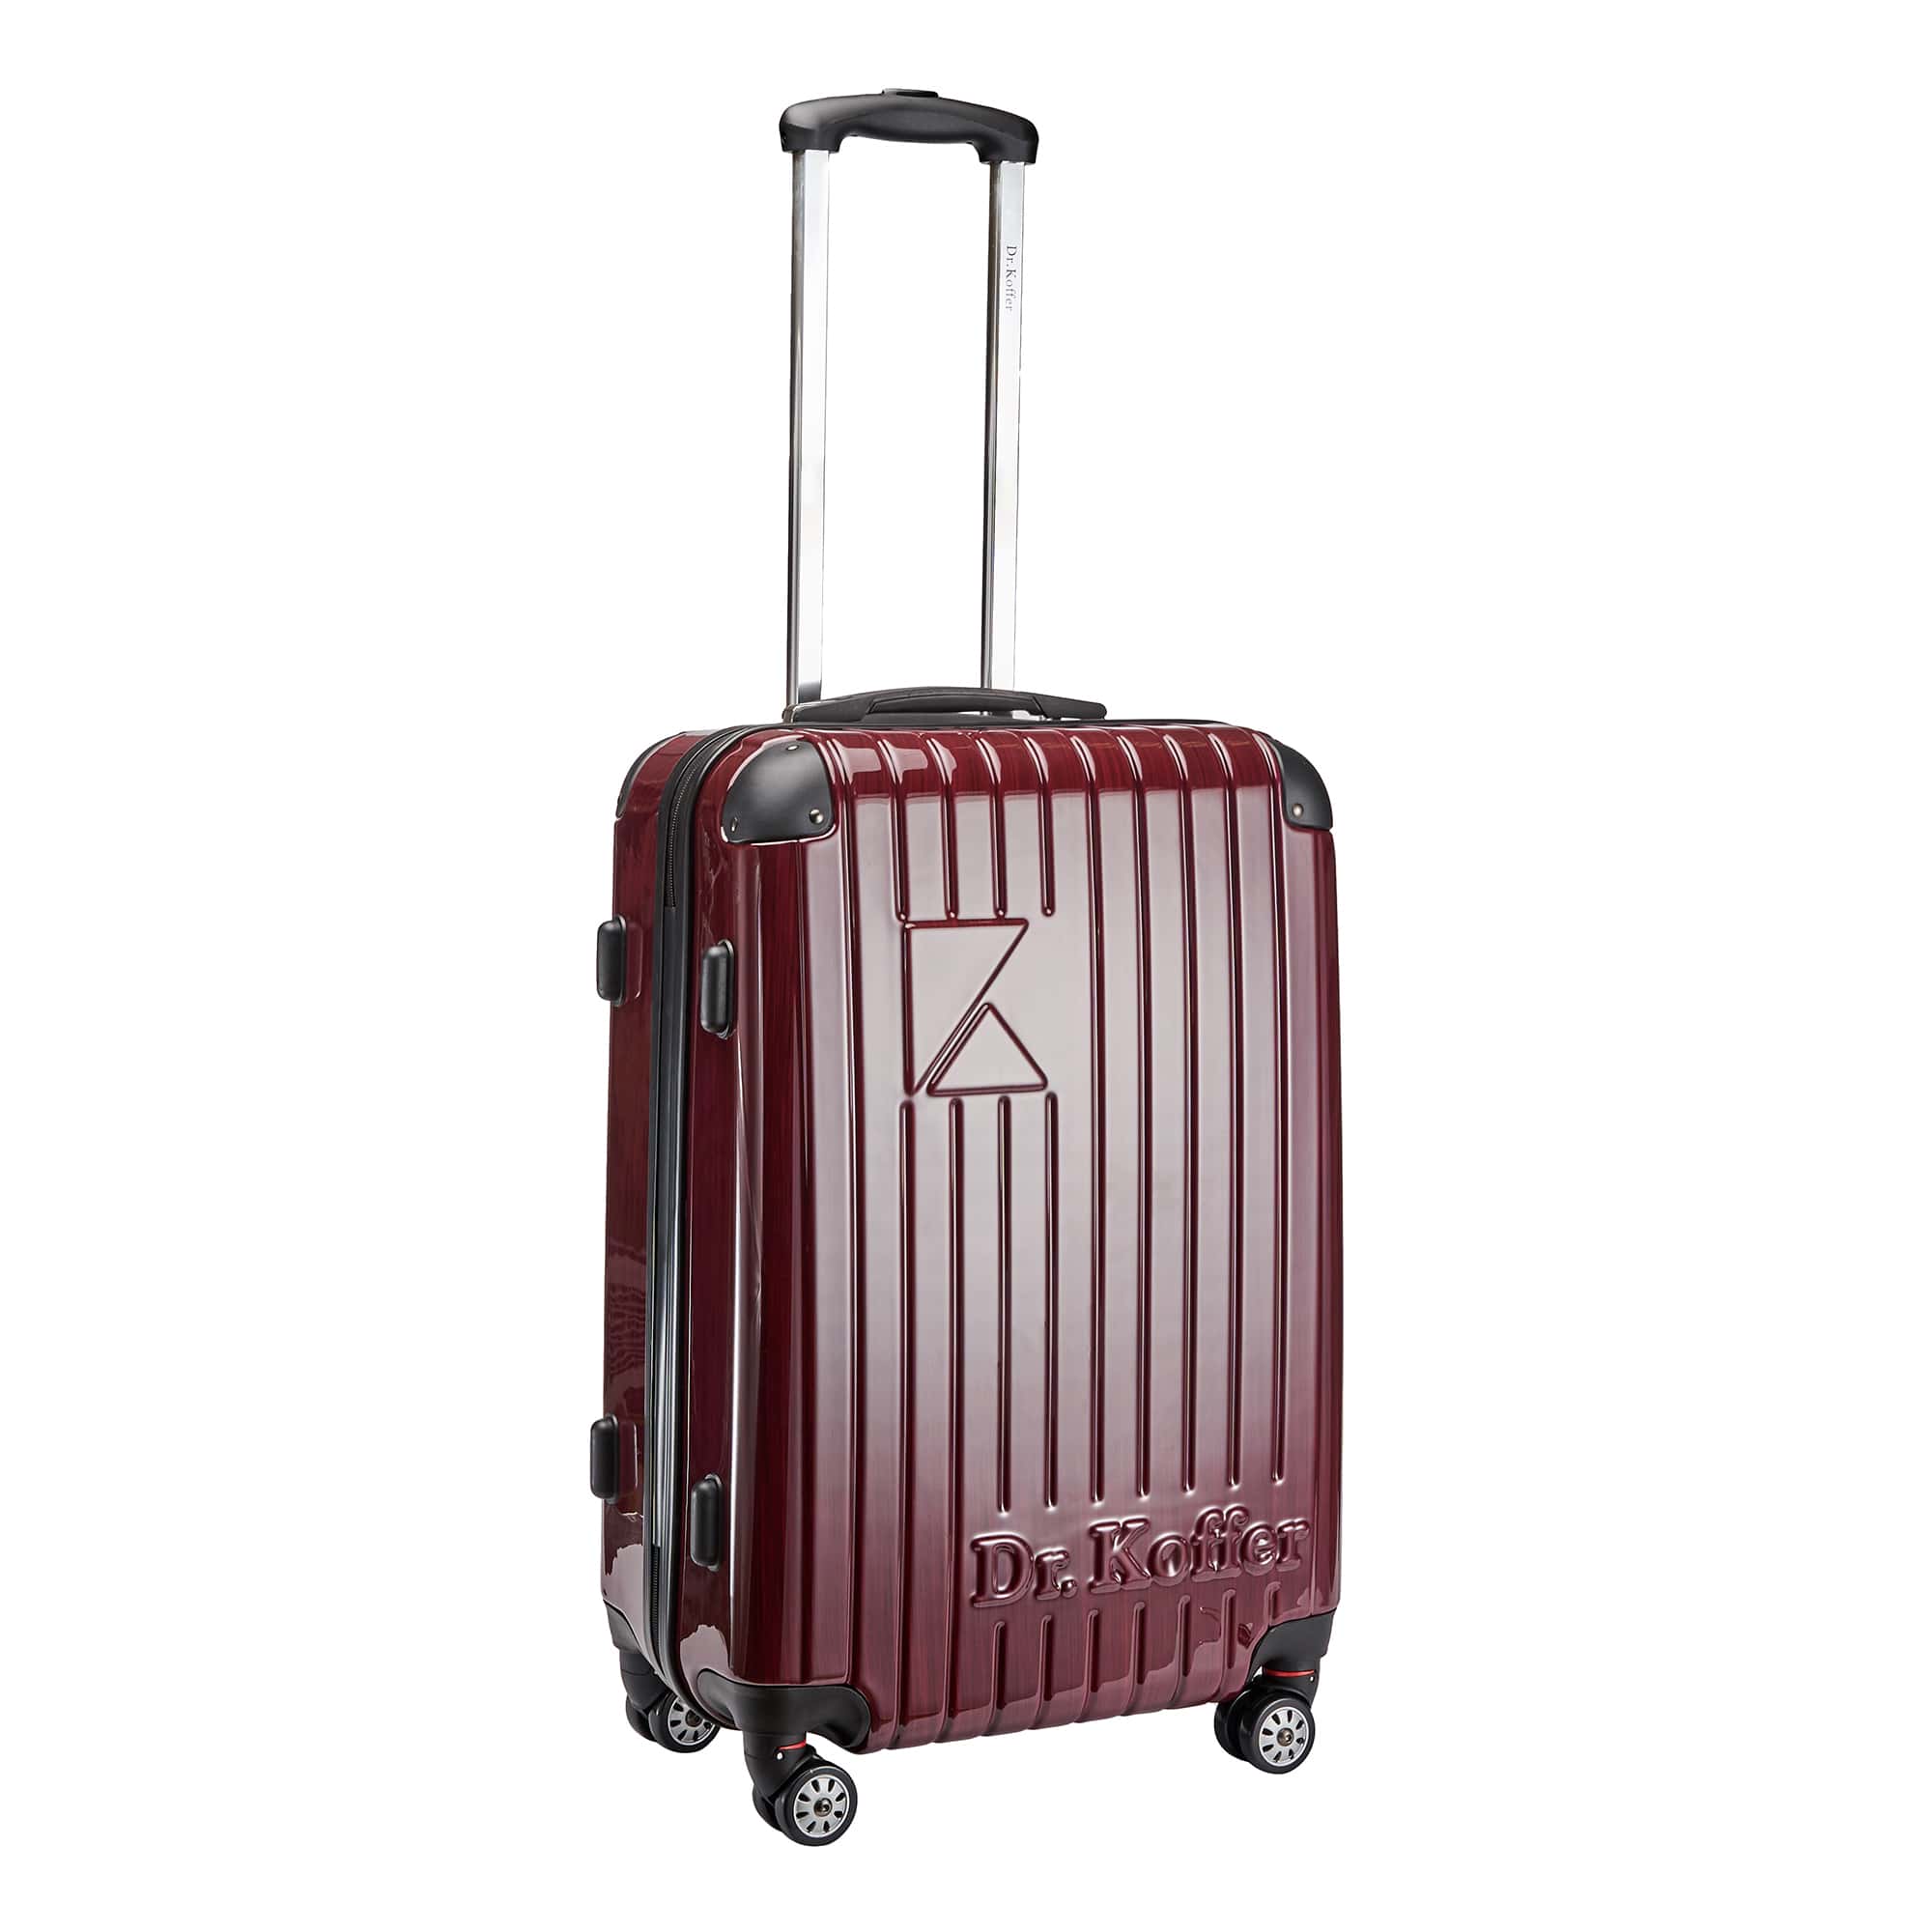 Др.Коффер L102TC19-250-12 чемодан, цвет красный - фото 1